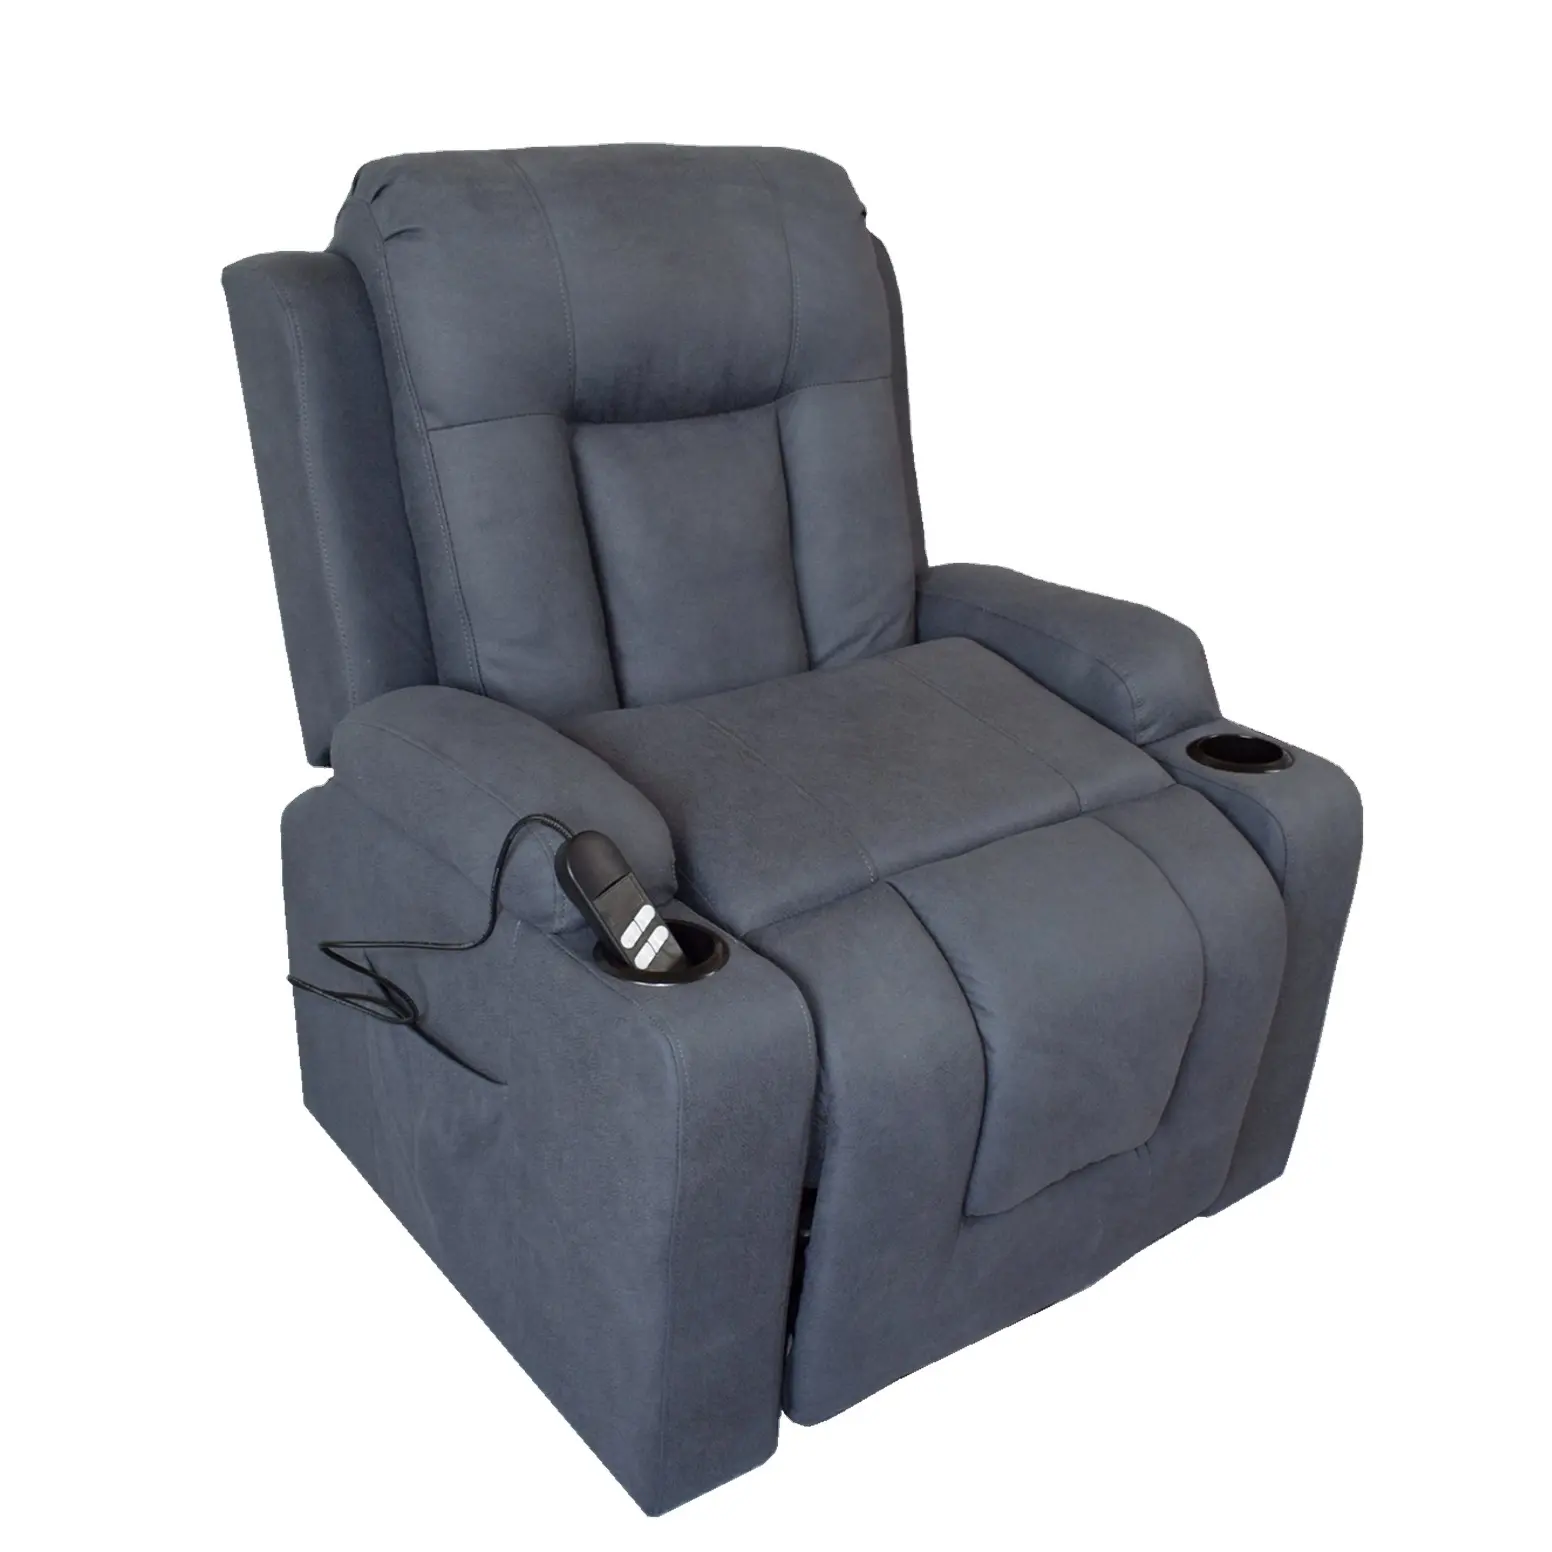 GEEKSOFA ZOY 4 posicional Elevador Final Cadeira reclinável do banco Do Mundo mais recente, reclinável prático mais inovador no mercado